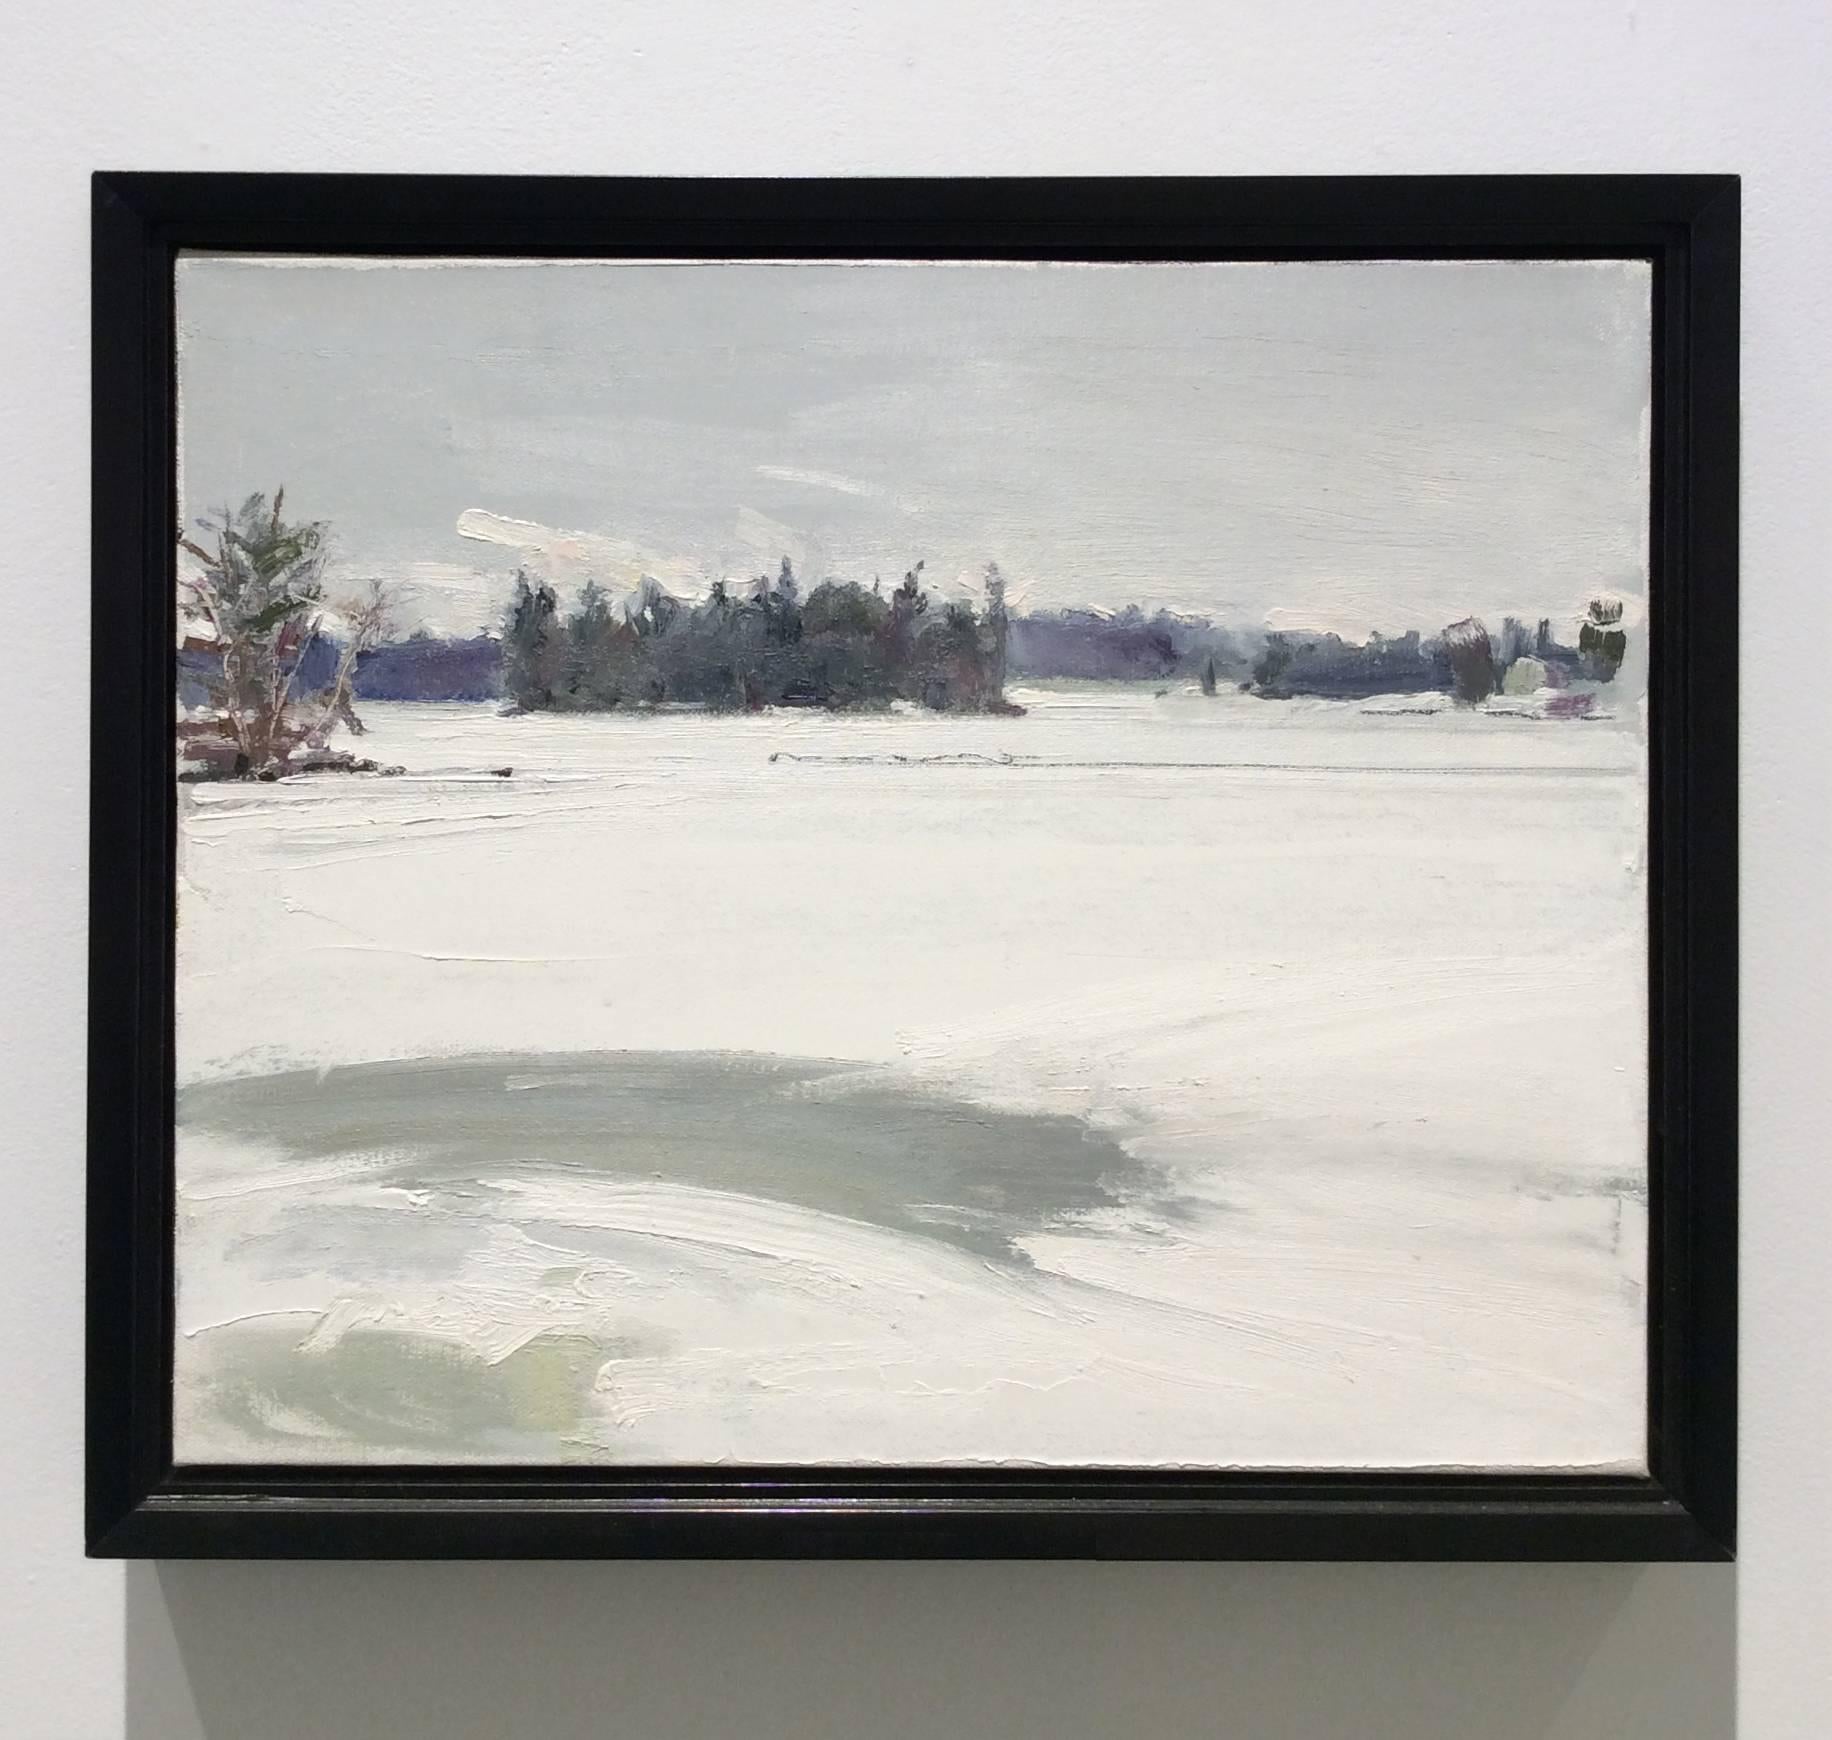 Nach Dusk: Landschaft, Ölgemälde von Winter, weißer Schnee auf einem Landschaftsfeld  – Painting von John Kelly